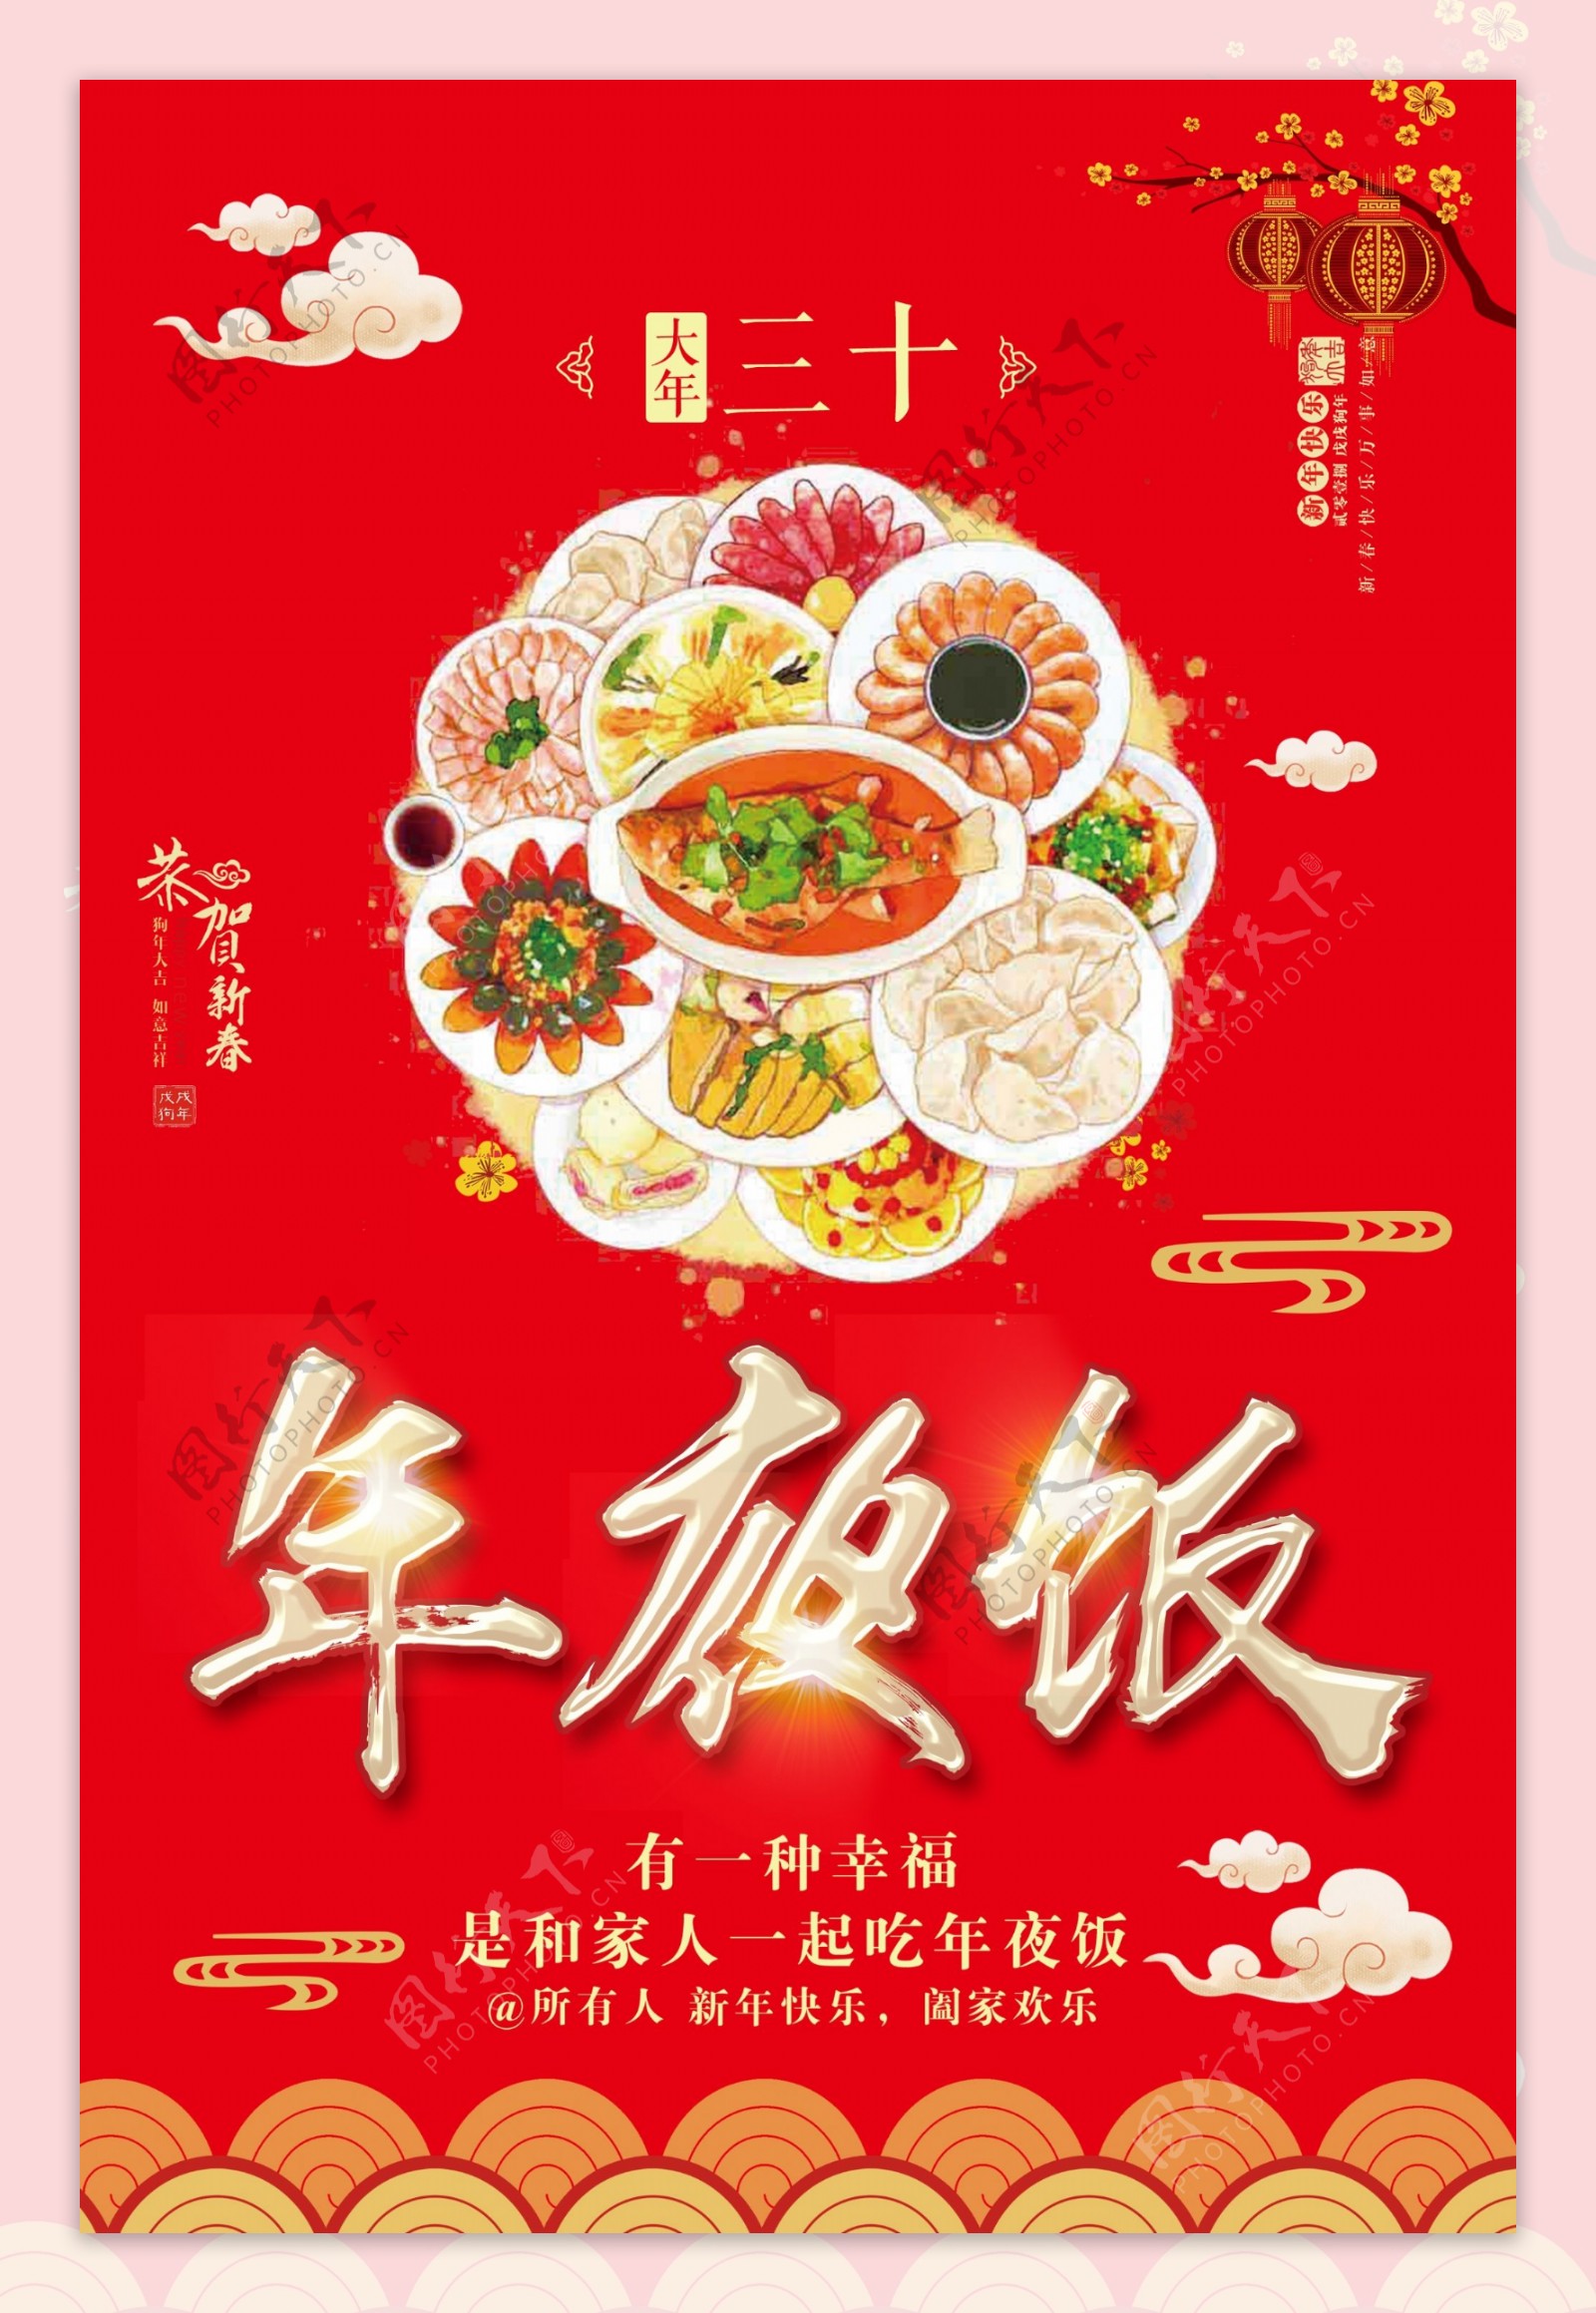 中国风年夜饭宣传海报设计